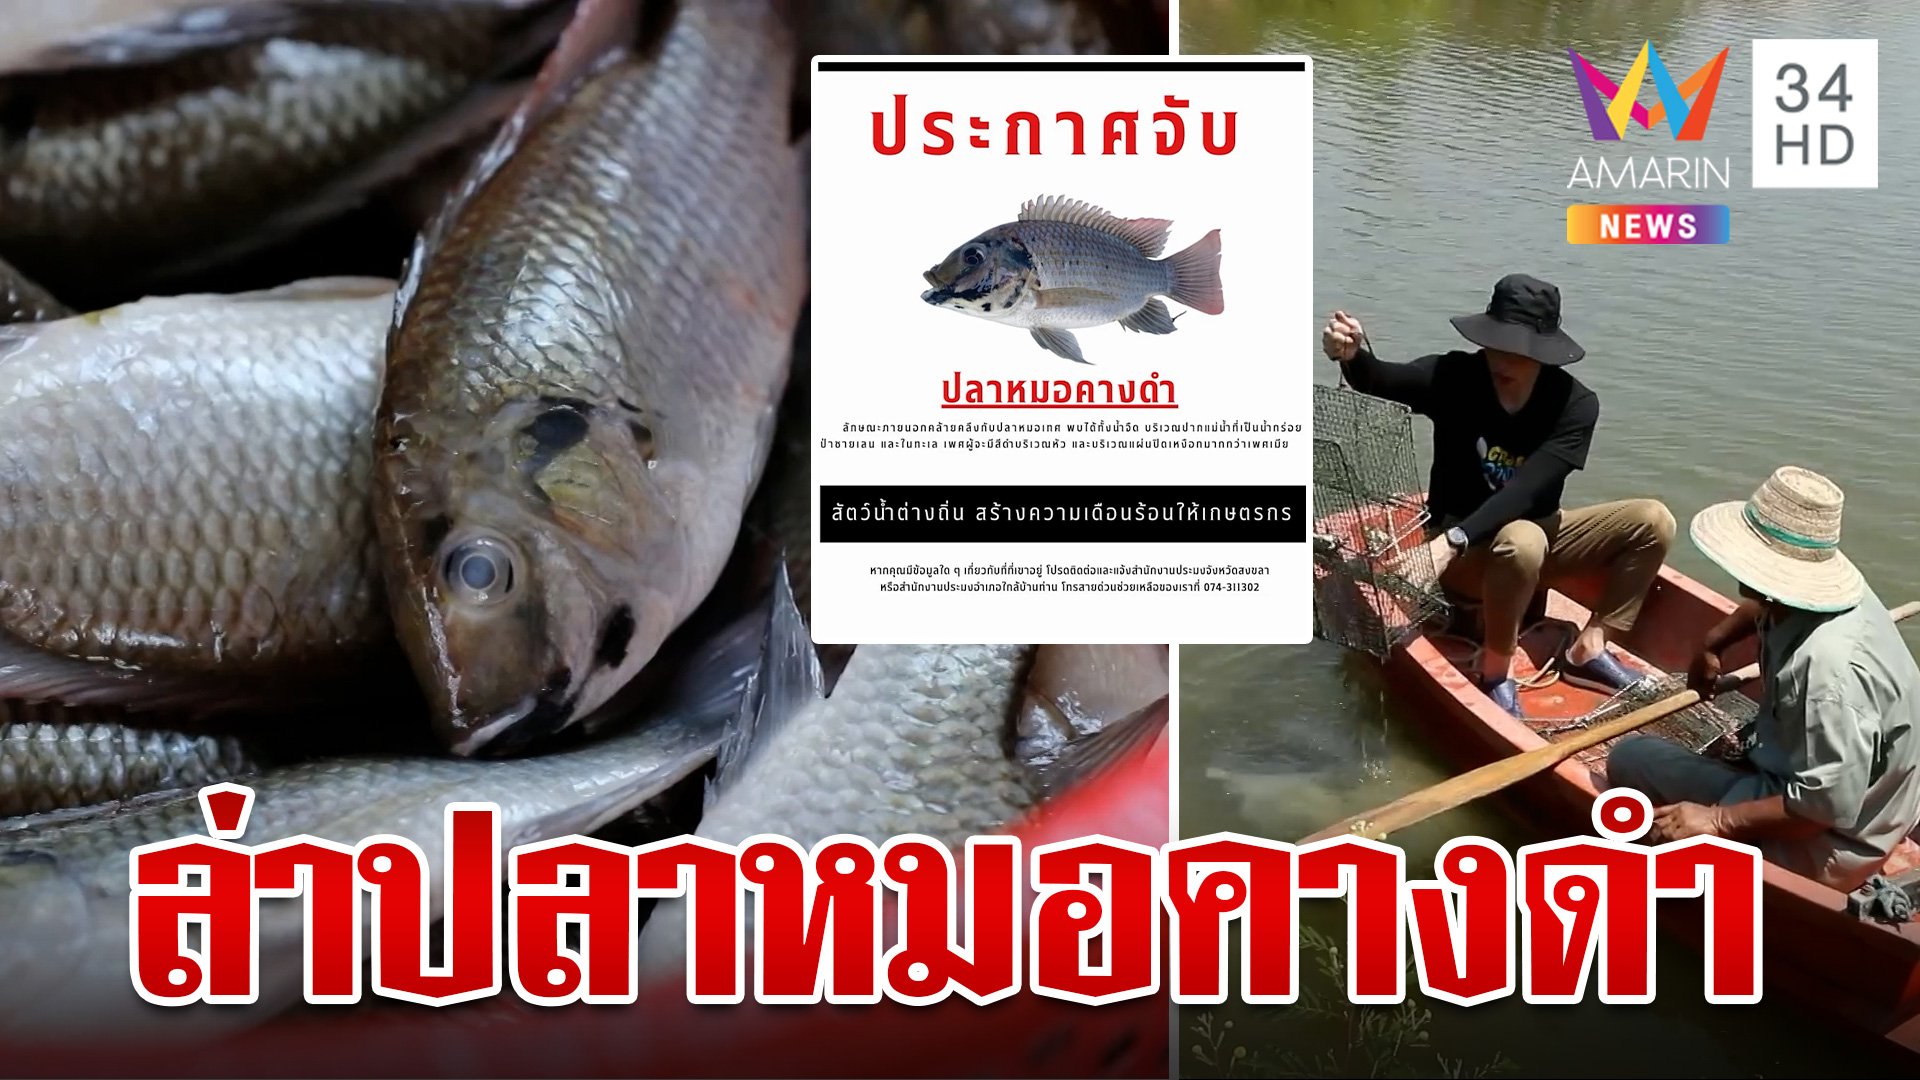 ระดมล่า "ปลาหมอคางดำ" สัตว์น้ำต่างถิ่นที่กำลังแพร่ระบาดหนัก | ทุบโต๊ะข่าว | 3 ก.ค. 67 | AMARIN TVHD34